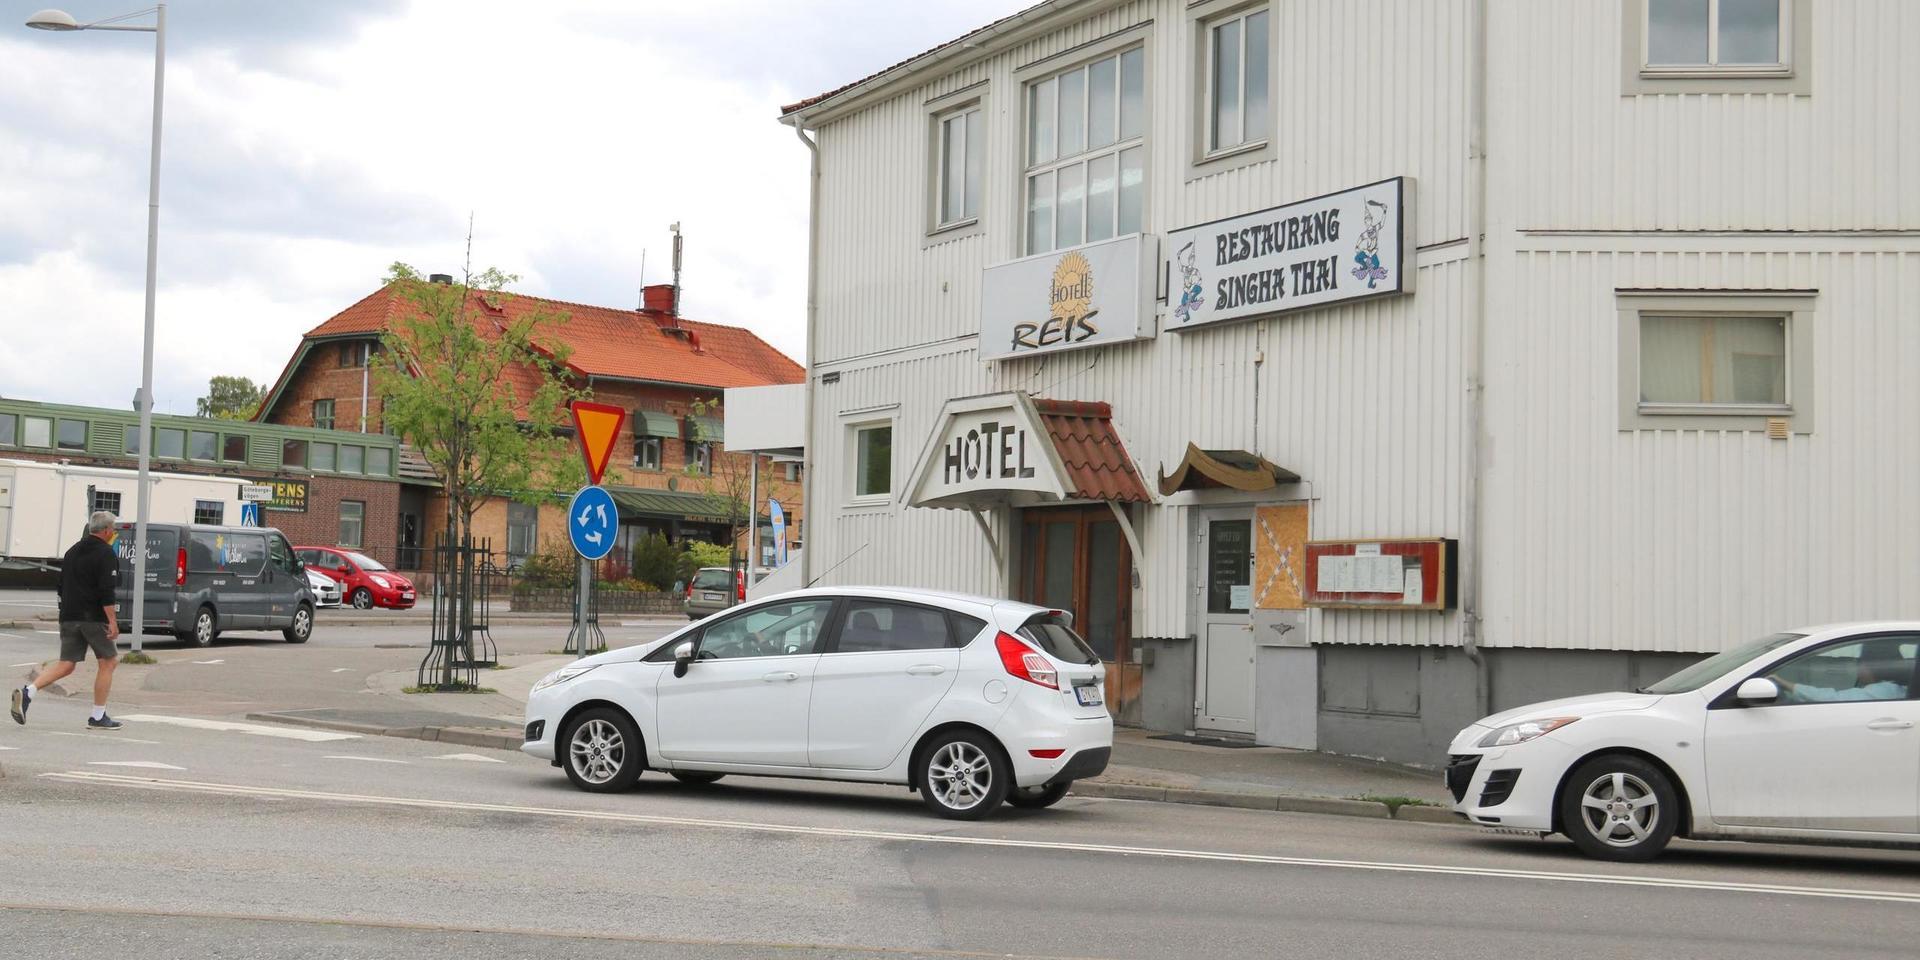 Hotell Reis var ett av tio hyreskontrakt som kommunen tecknade i samband med flyktingkrisen 2015.